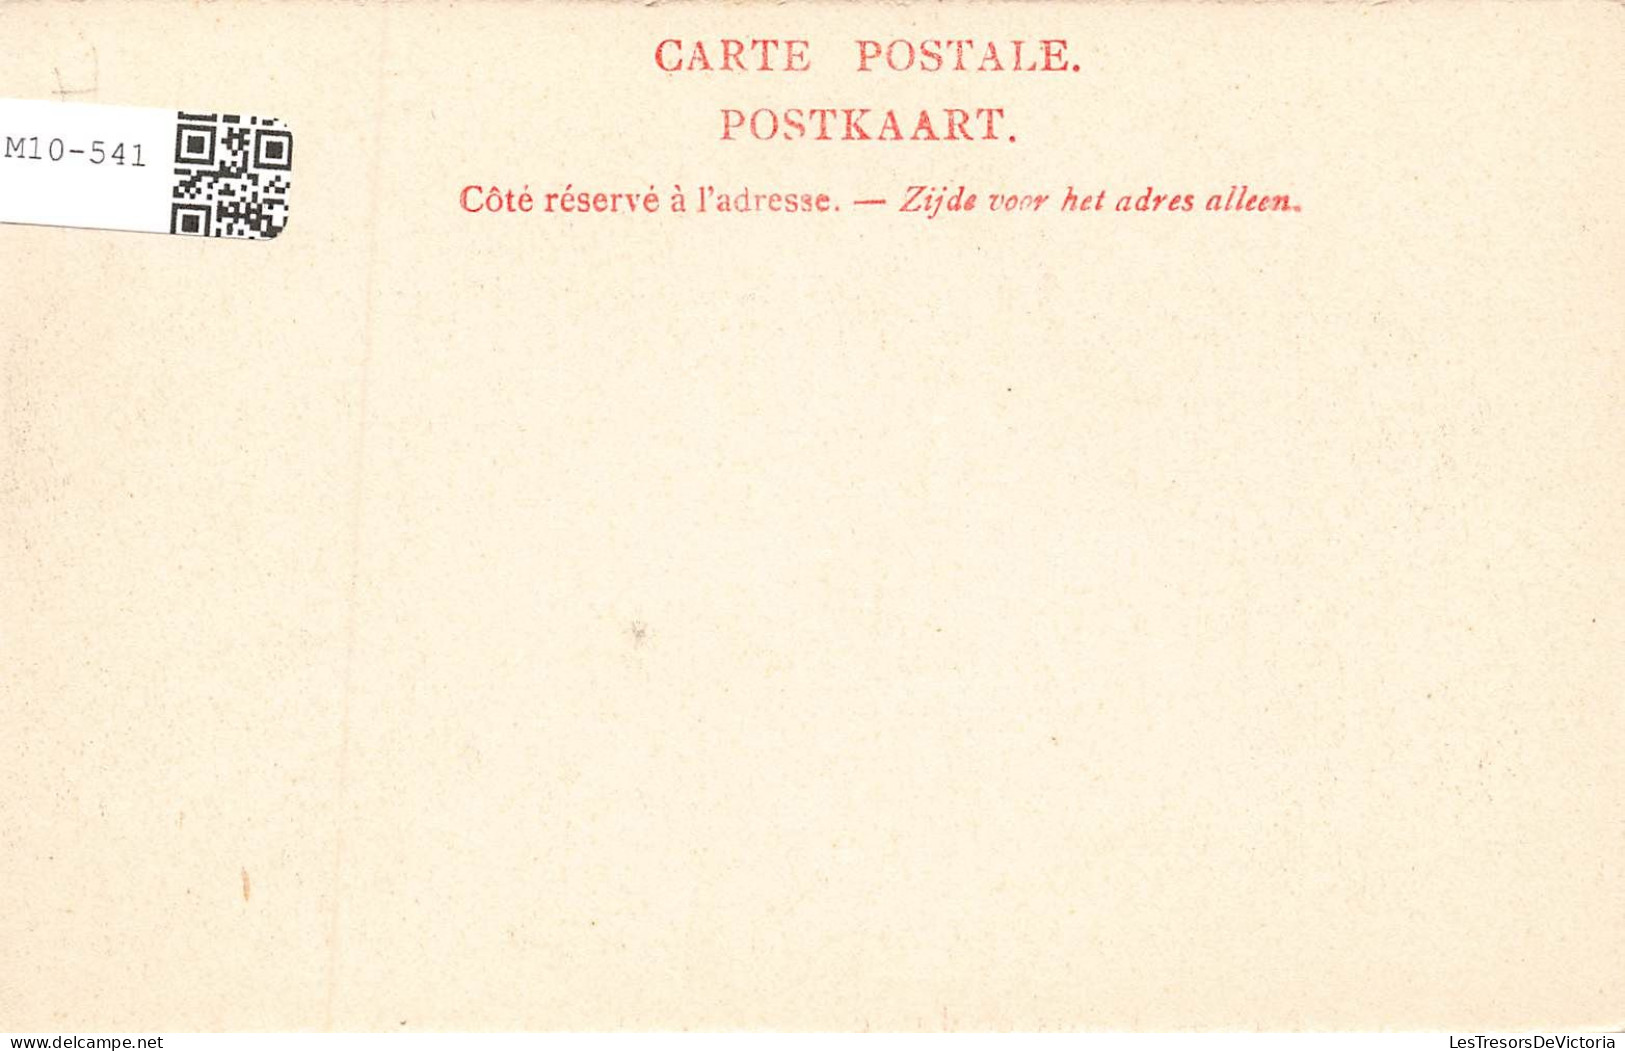 BELGIQUE - Liège - Palais De Justice - Carte Postale Ancienne - Liege